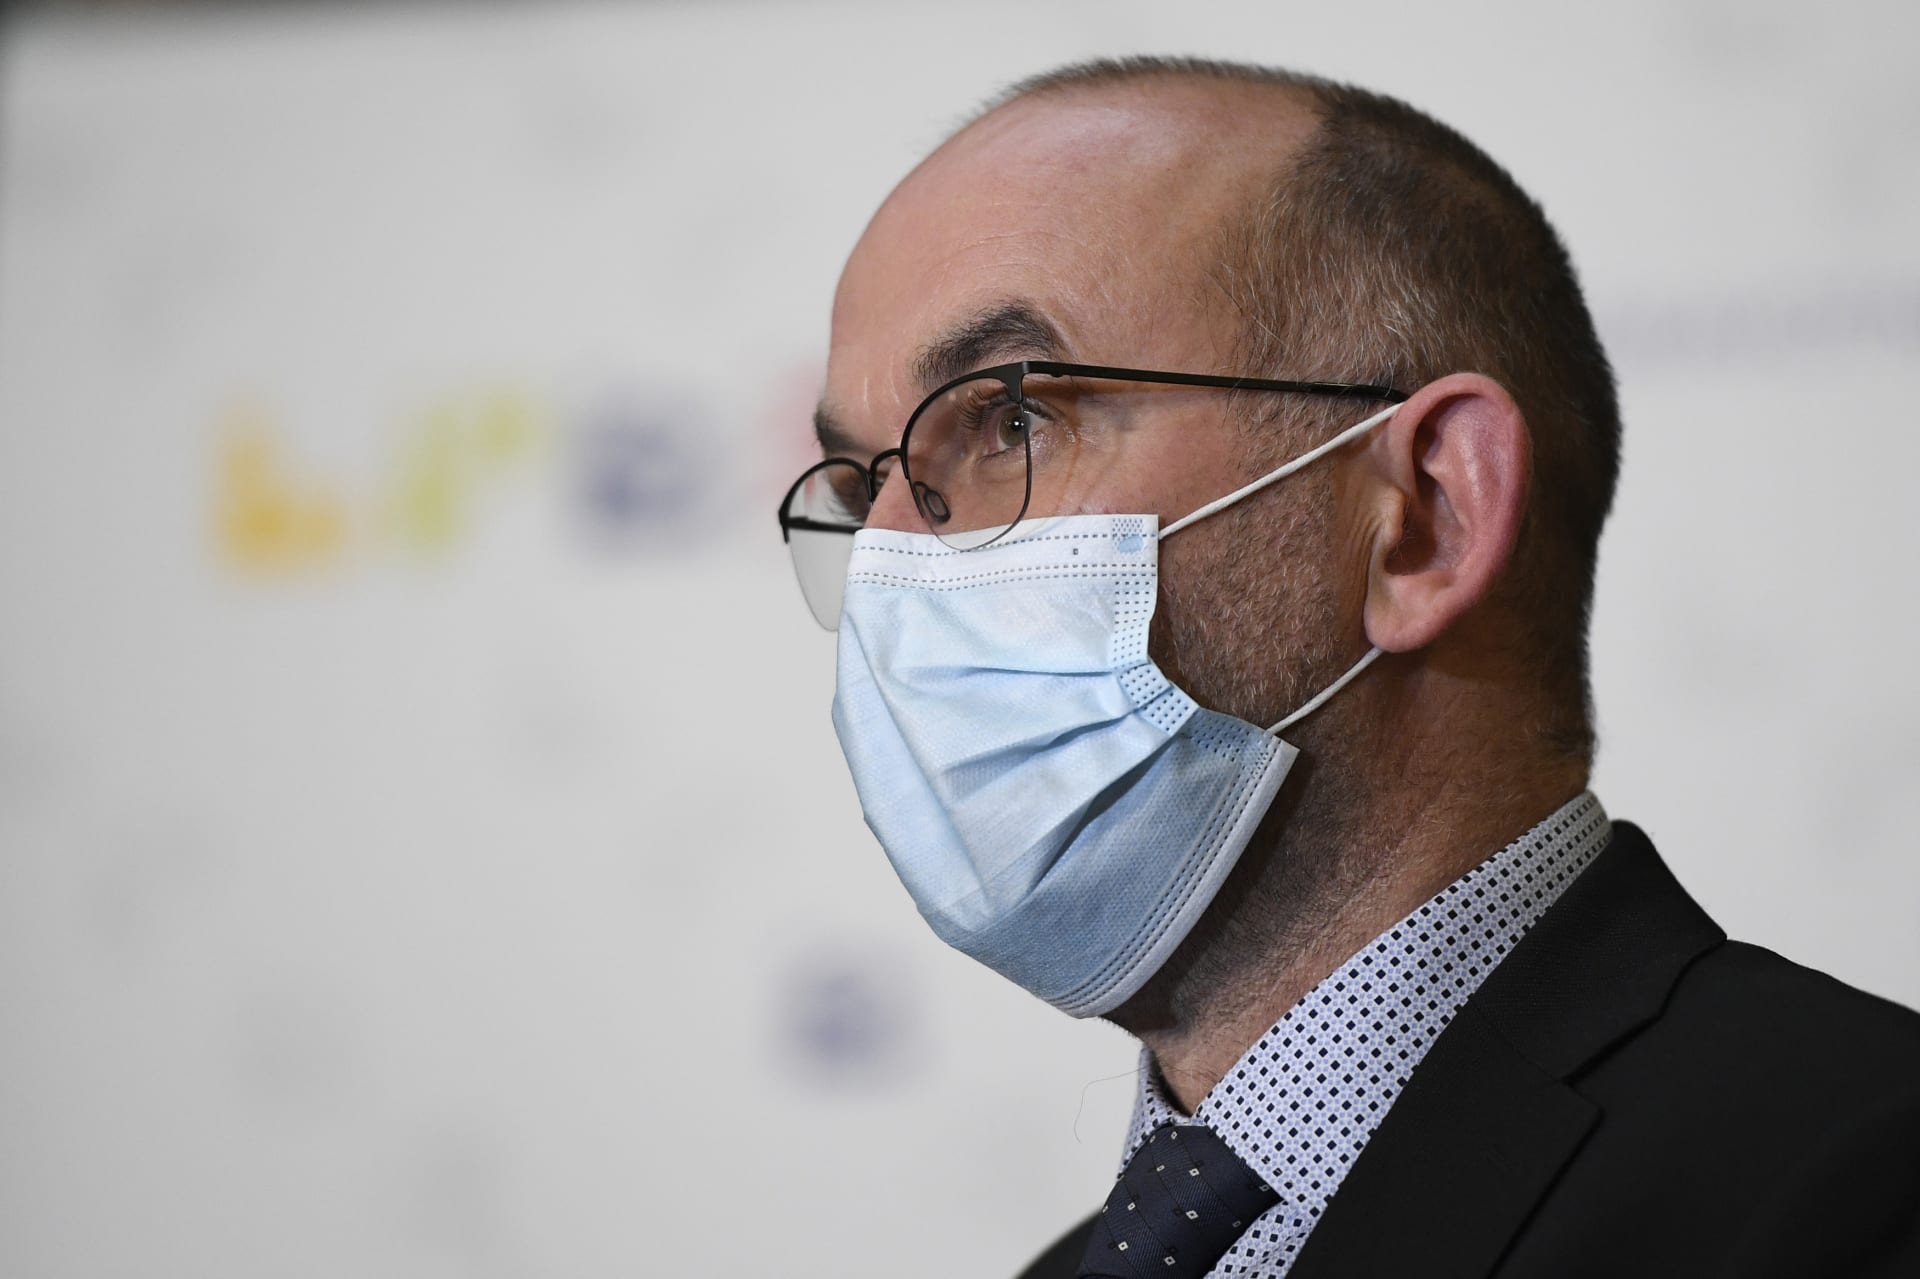 Ministr zdravotnictví Jan Blatný (za ANO) nevyloučil, že při zhoršení počtů lidí s covidem v nemocnicích bude navrhovat přesun do nejpřísnějšího, pátého stupně skóre systému PES.